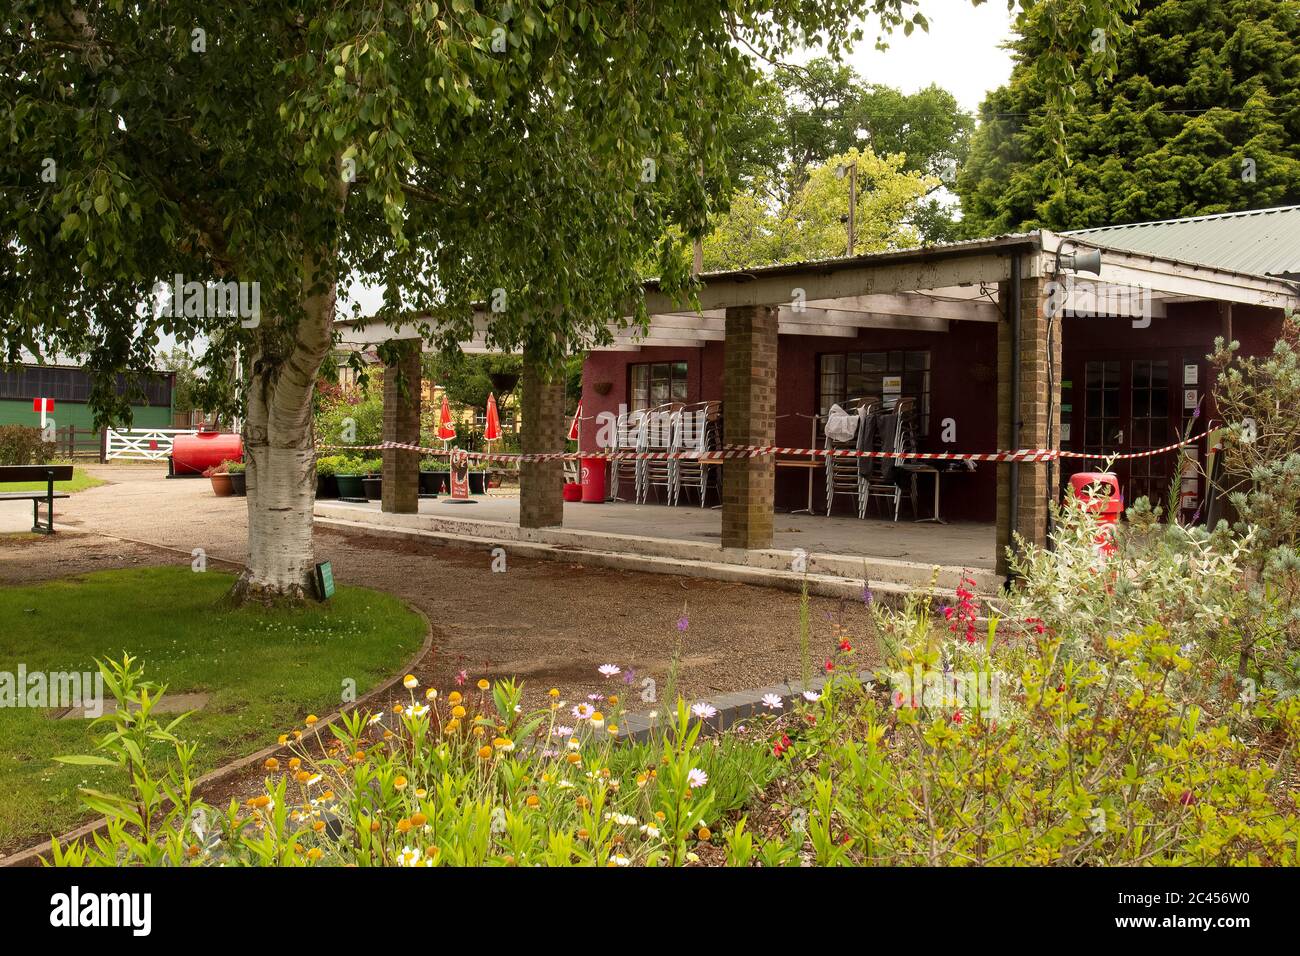 La reapertura de los Jardines Bressingham con restricciones de cierre Covid-19 cierra el café pero se permiten picnics. Bressingham, Diss, Norfolk, Reino Unido - 19 de junio de 2020 Foto de stock